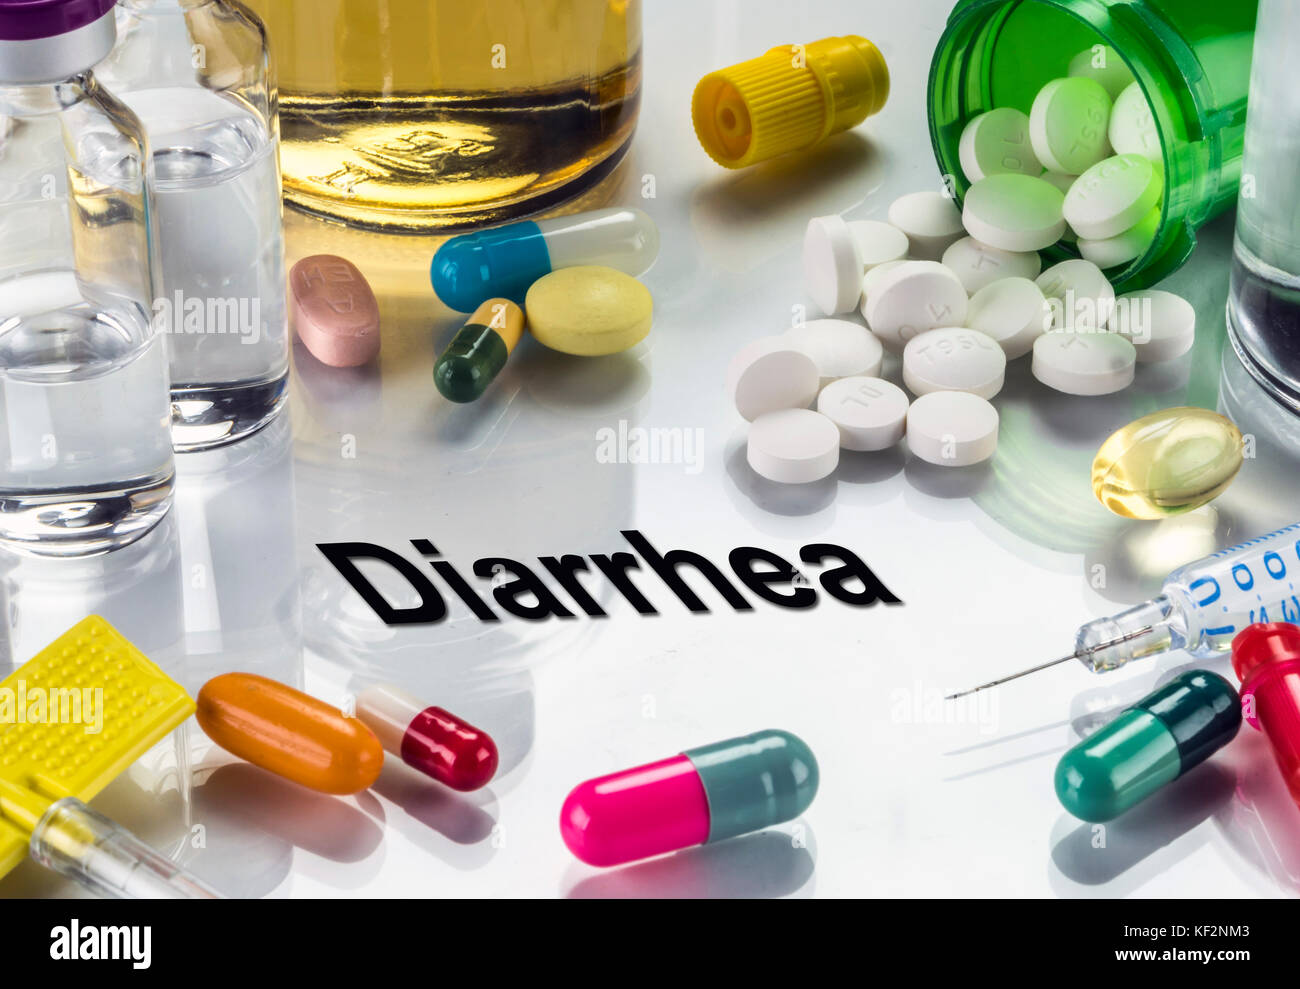 Diarrhea, medicines as concept of ordinary treatment, conceptual image Stock Photo